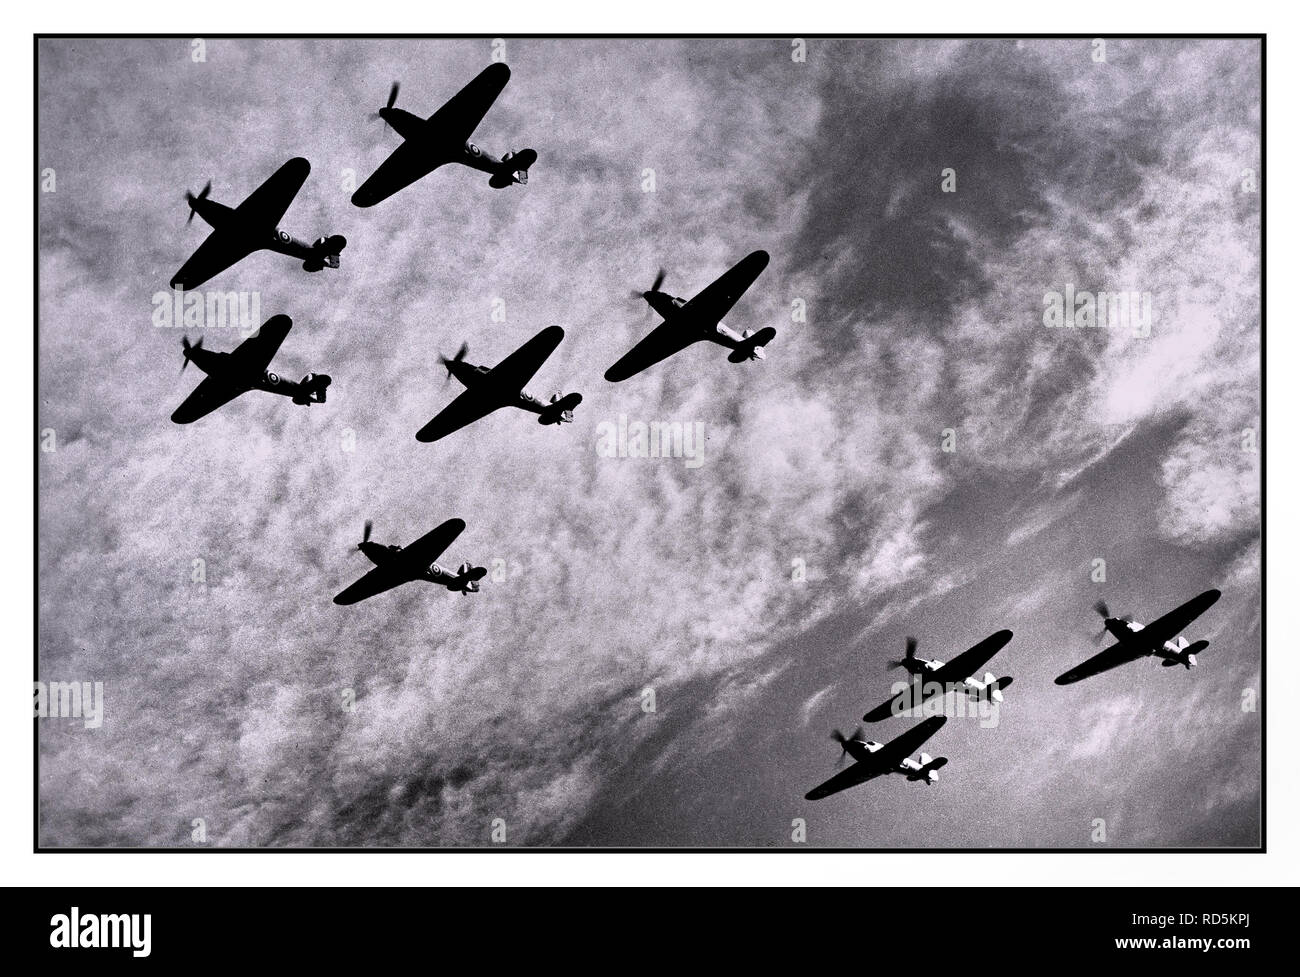 HAWKER HURRICANE FLUGZEUGE 1940 Vintage WW2 Schlacht von Großbritannien Squadron Bildung von Hawker Hurricanes von RAF Fighter Command, auf Patrouille zu verteidigen gegen Nazi-Deutschland Bomber, wahllos angreifen Allgemeine besiedelten Gebieten in Großbritannien während der Blitz von 1940 Stockfoto